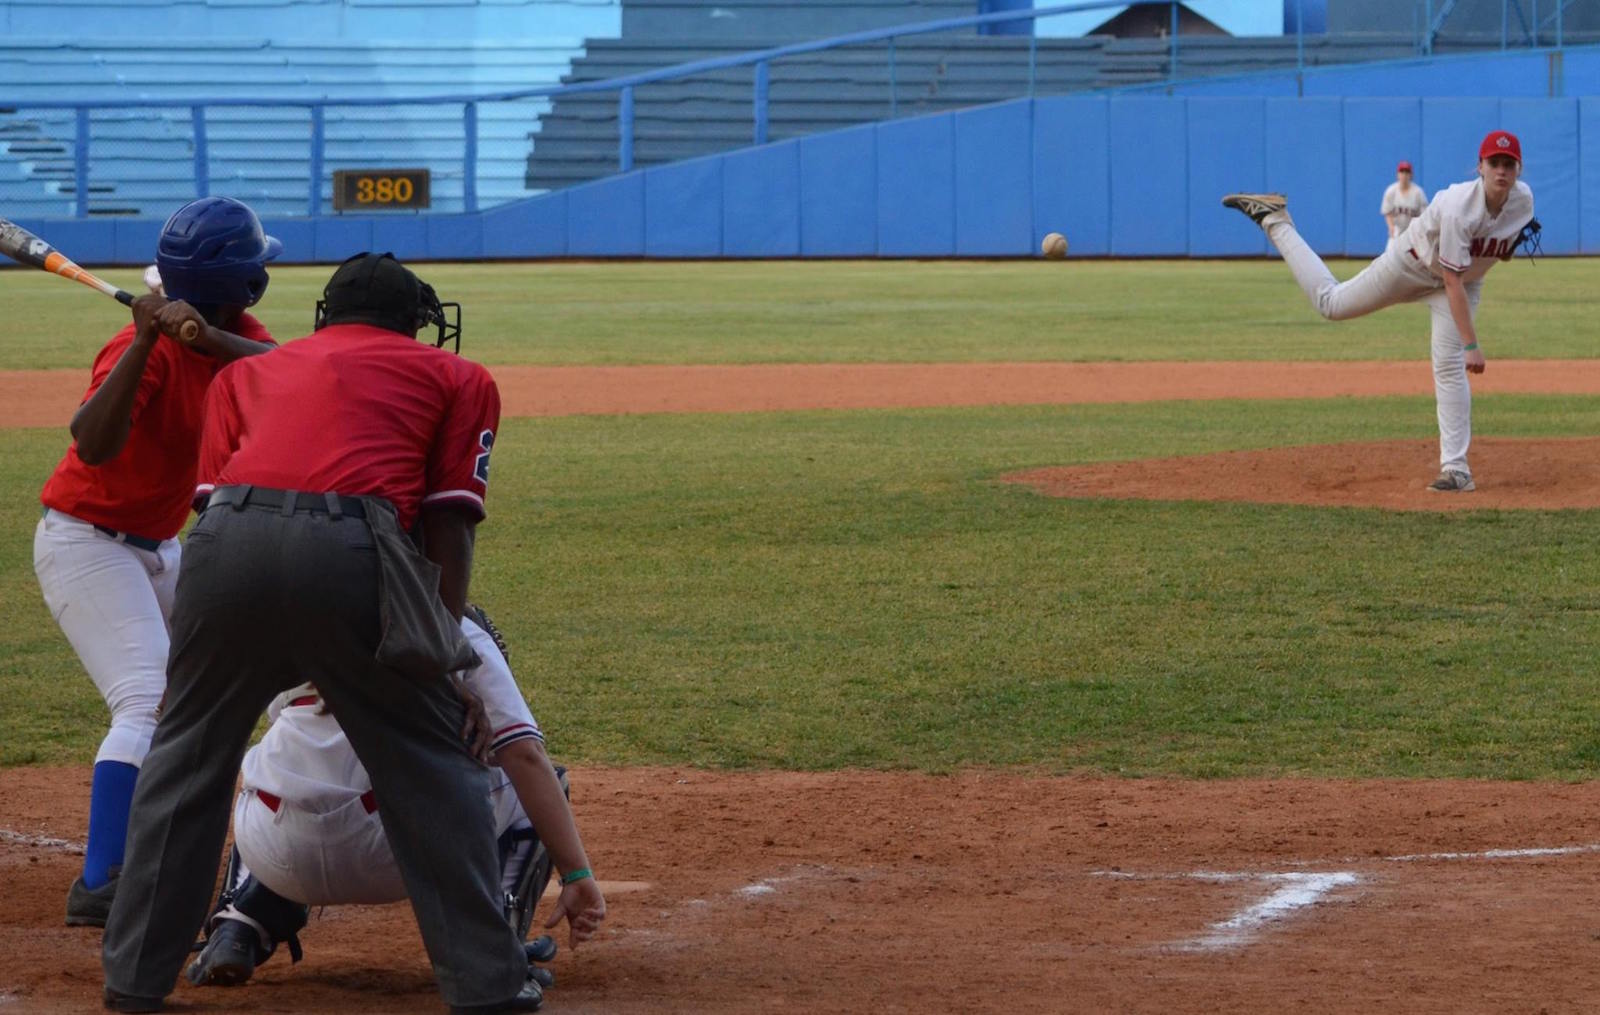 Jeunes baseballeuses : inscrivez-vous maintenant pour le camp de perfectionnement 2017 à Cuba